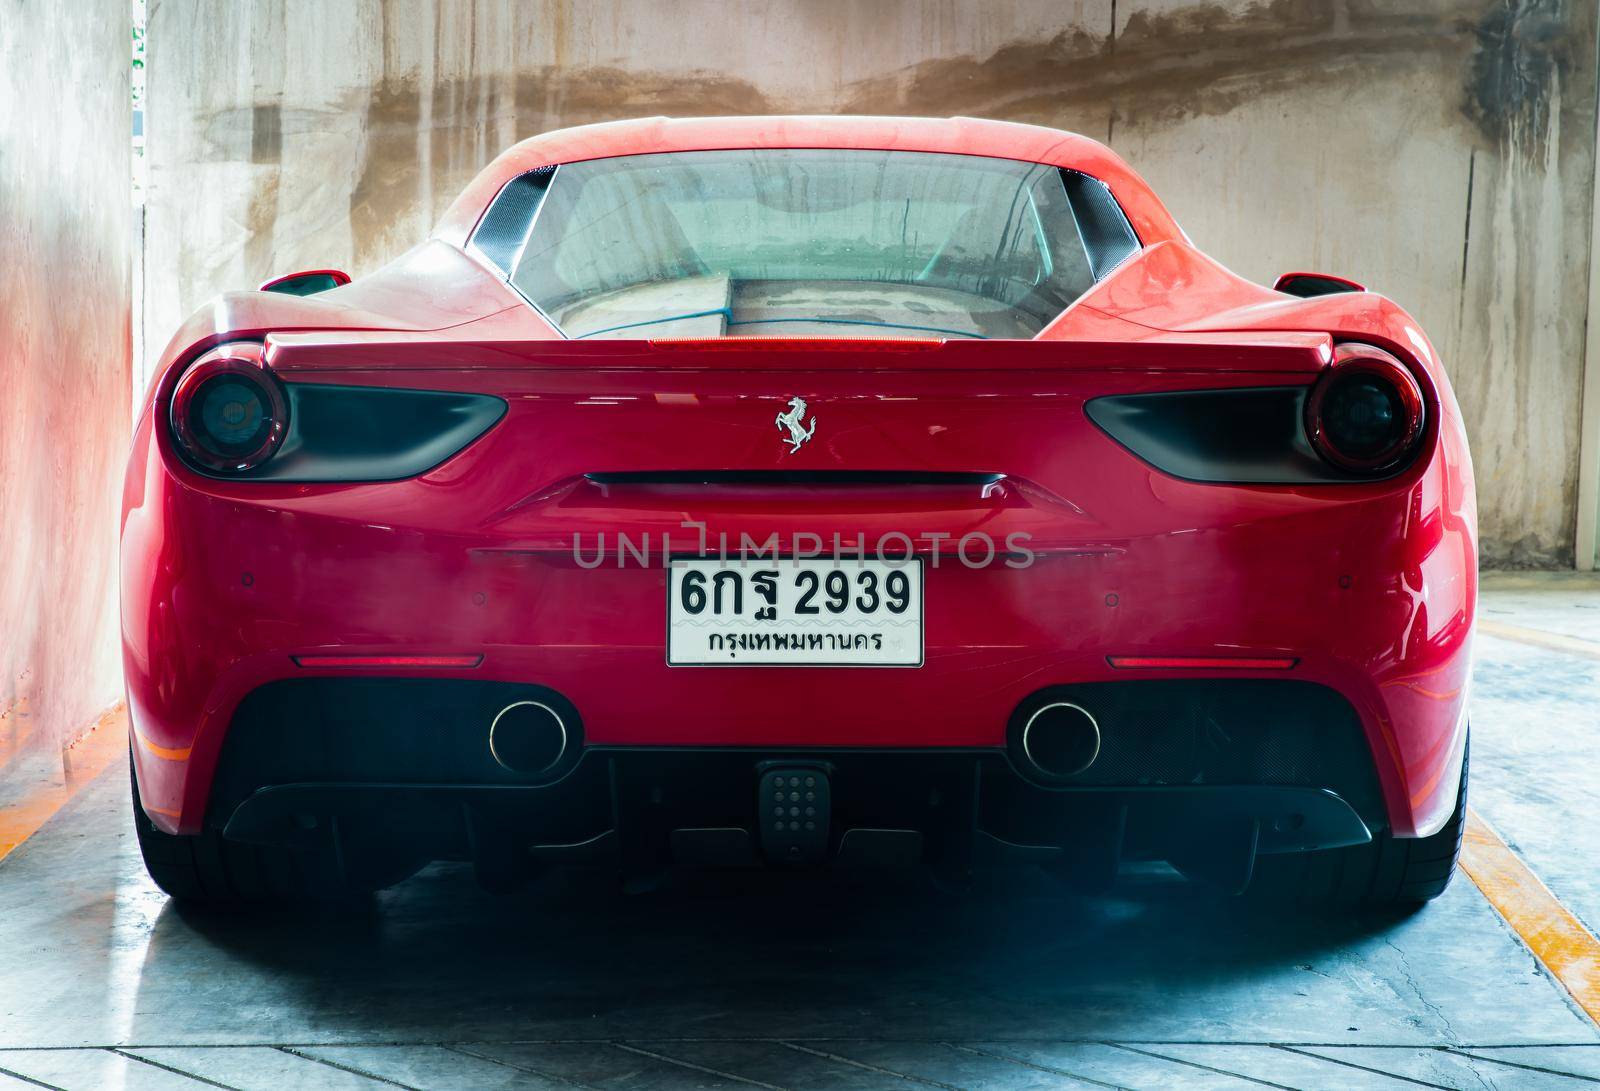 Rear view of Red metallic Ferrari car. Ferrari is Italian sports car.  by tosirikul